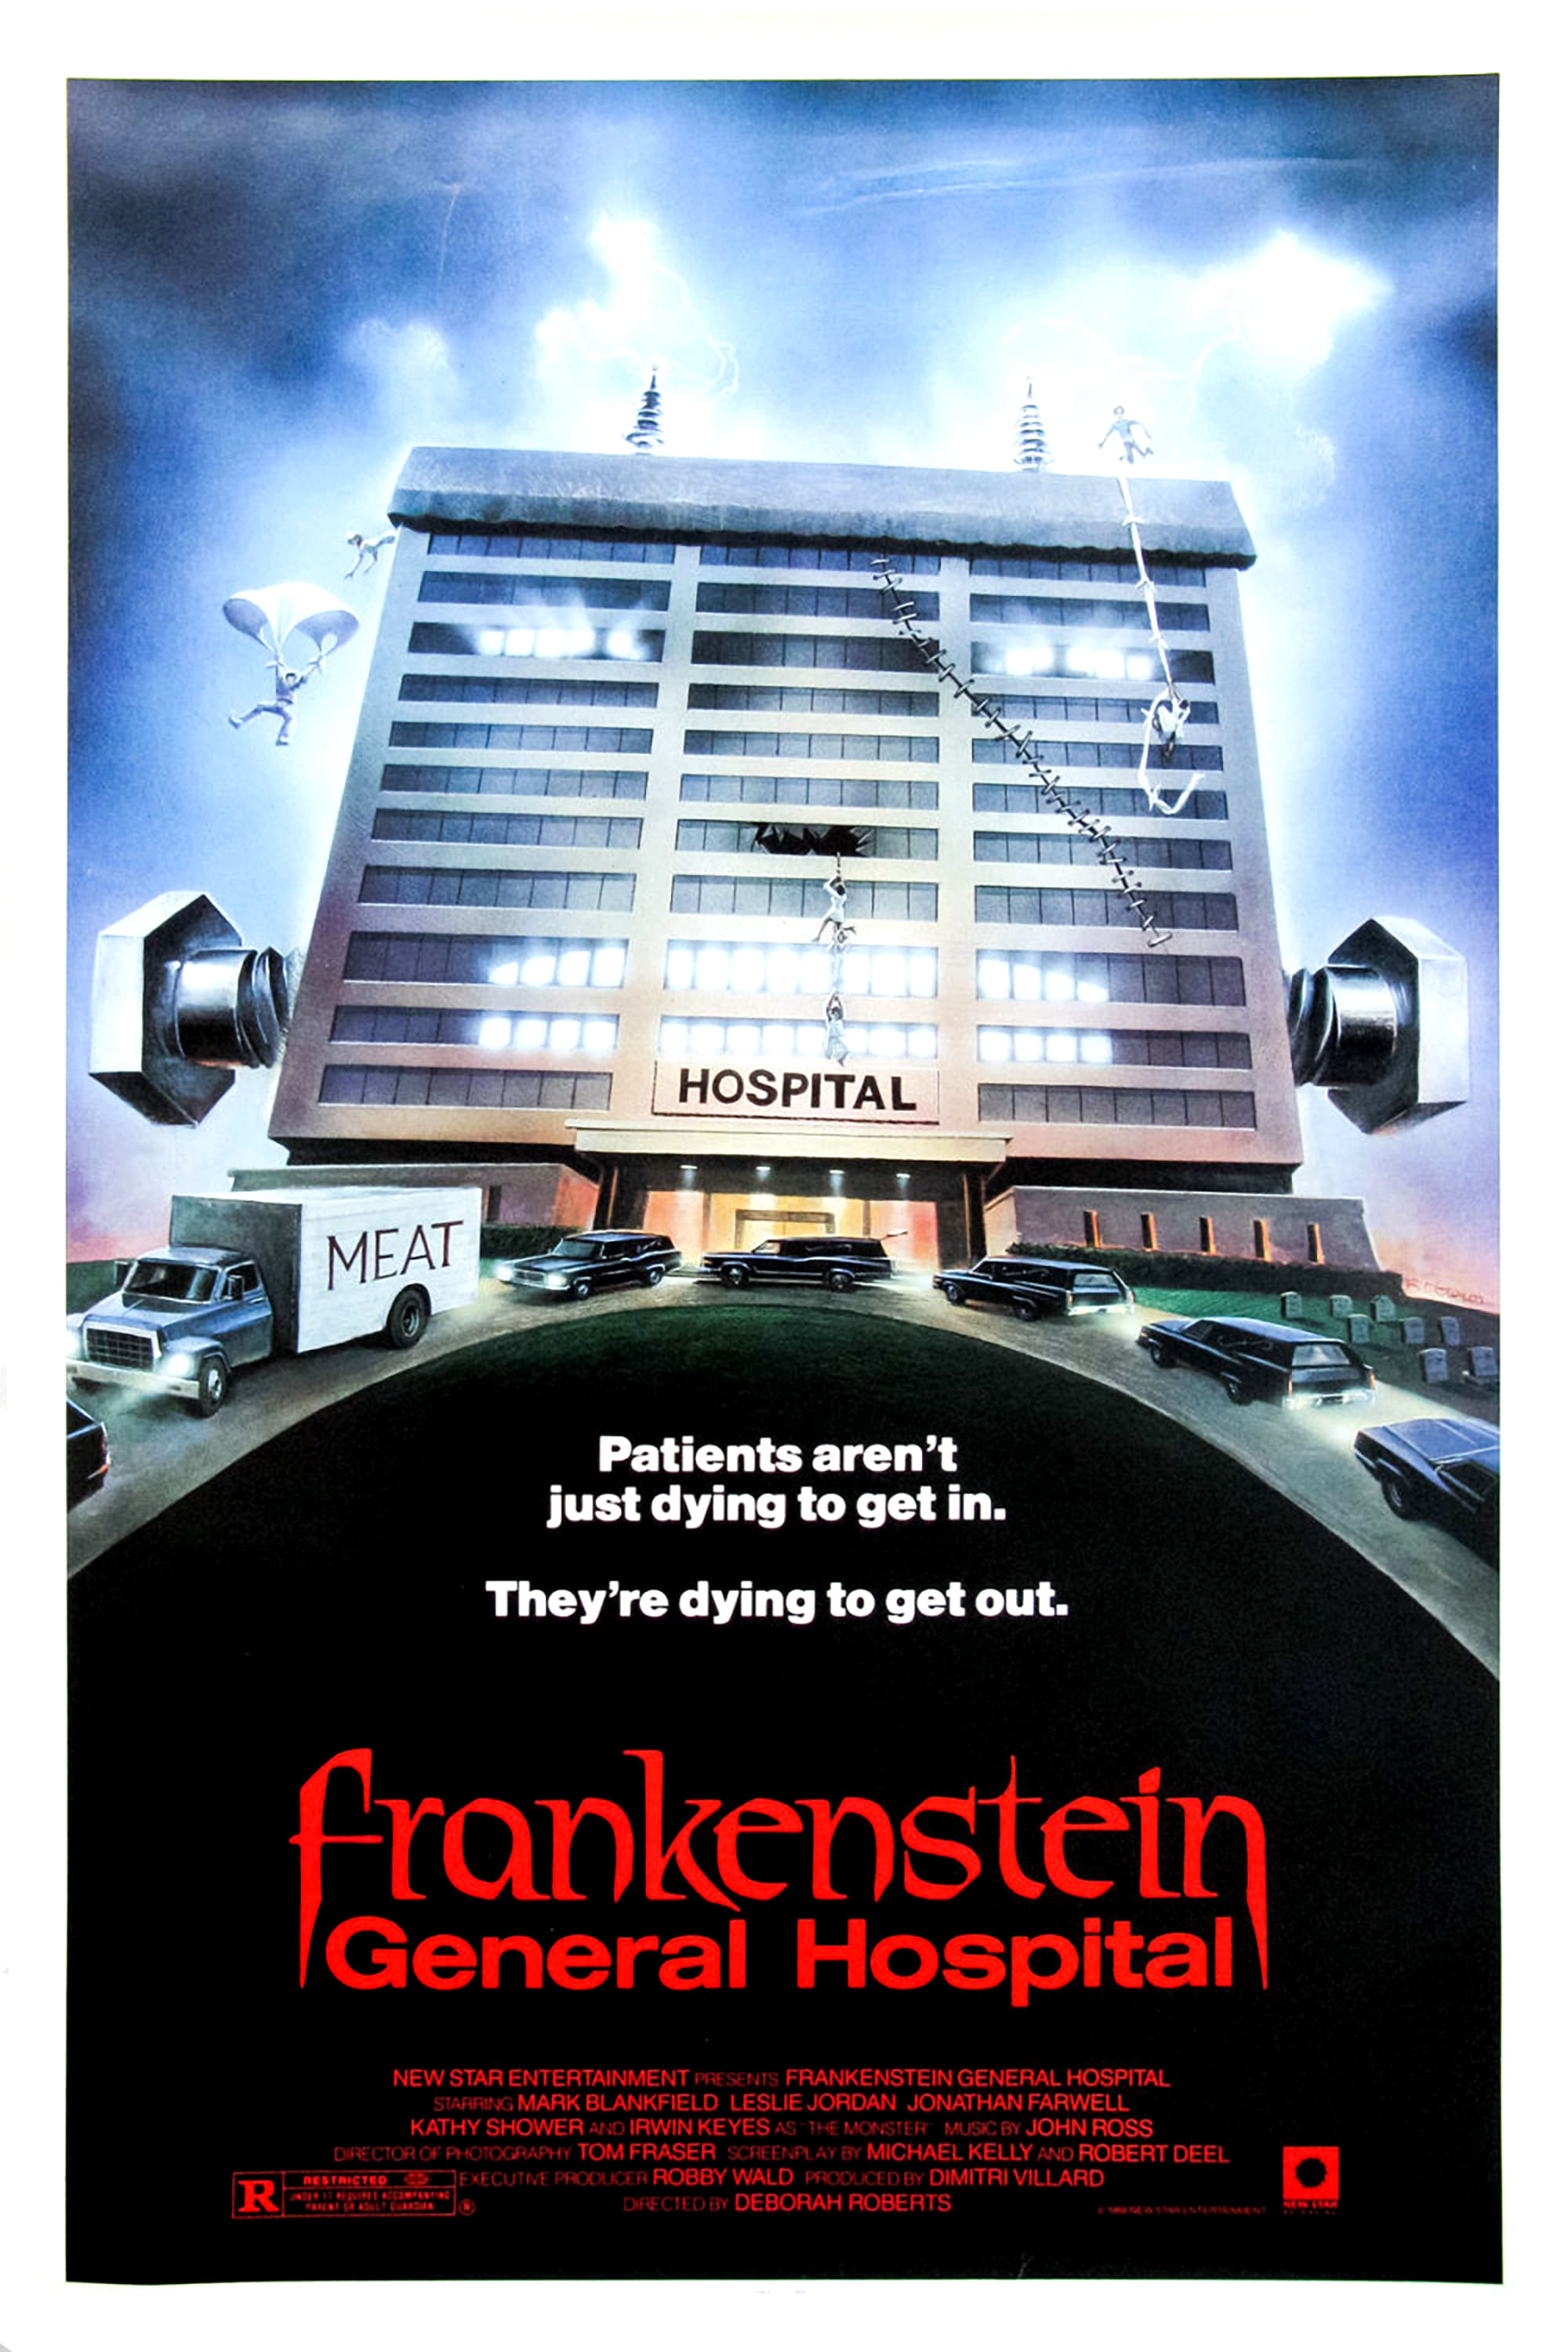 Frankenstein Hospital General (1988)